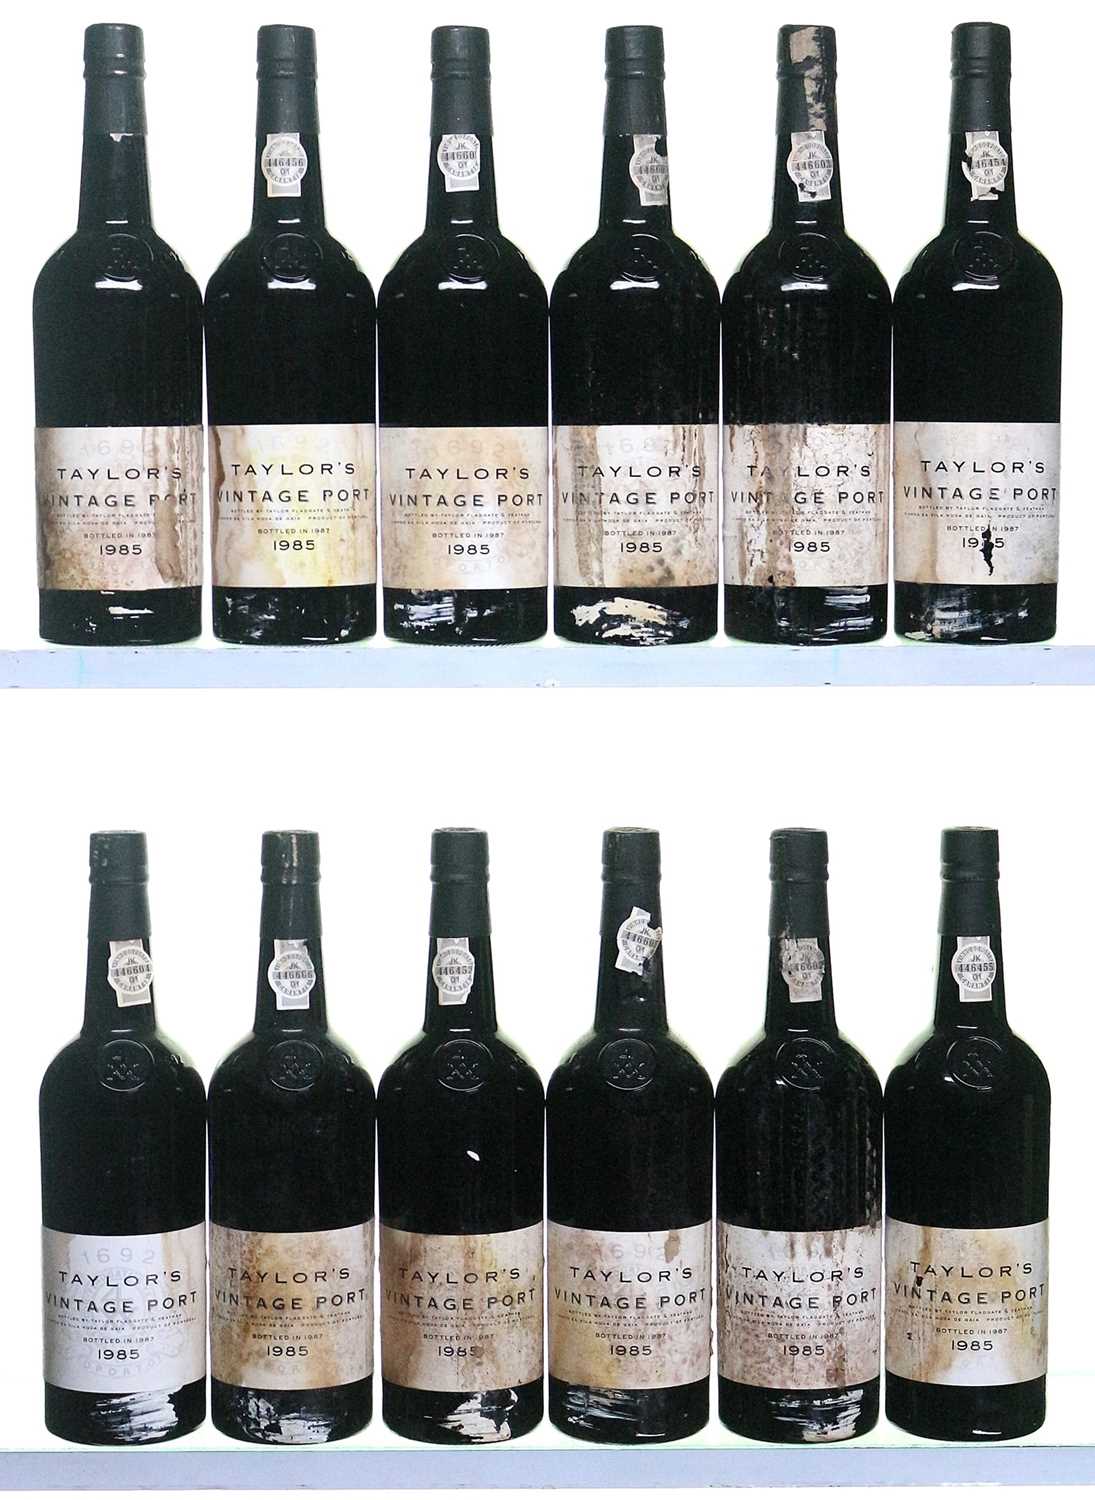 Lot 1 - 12 bottles 1985 Taylor